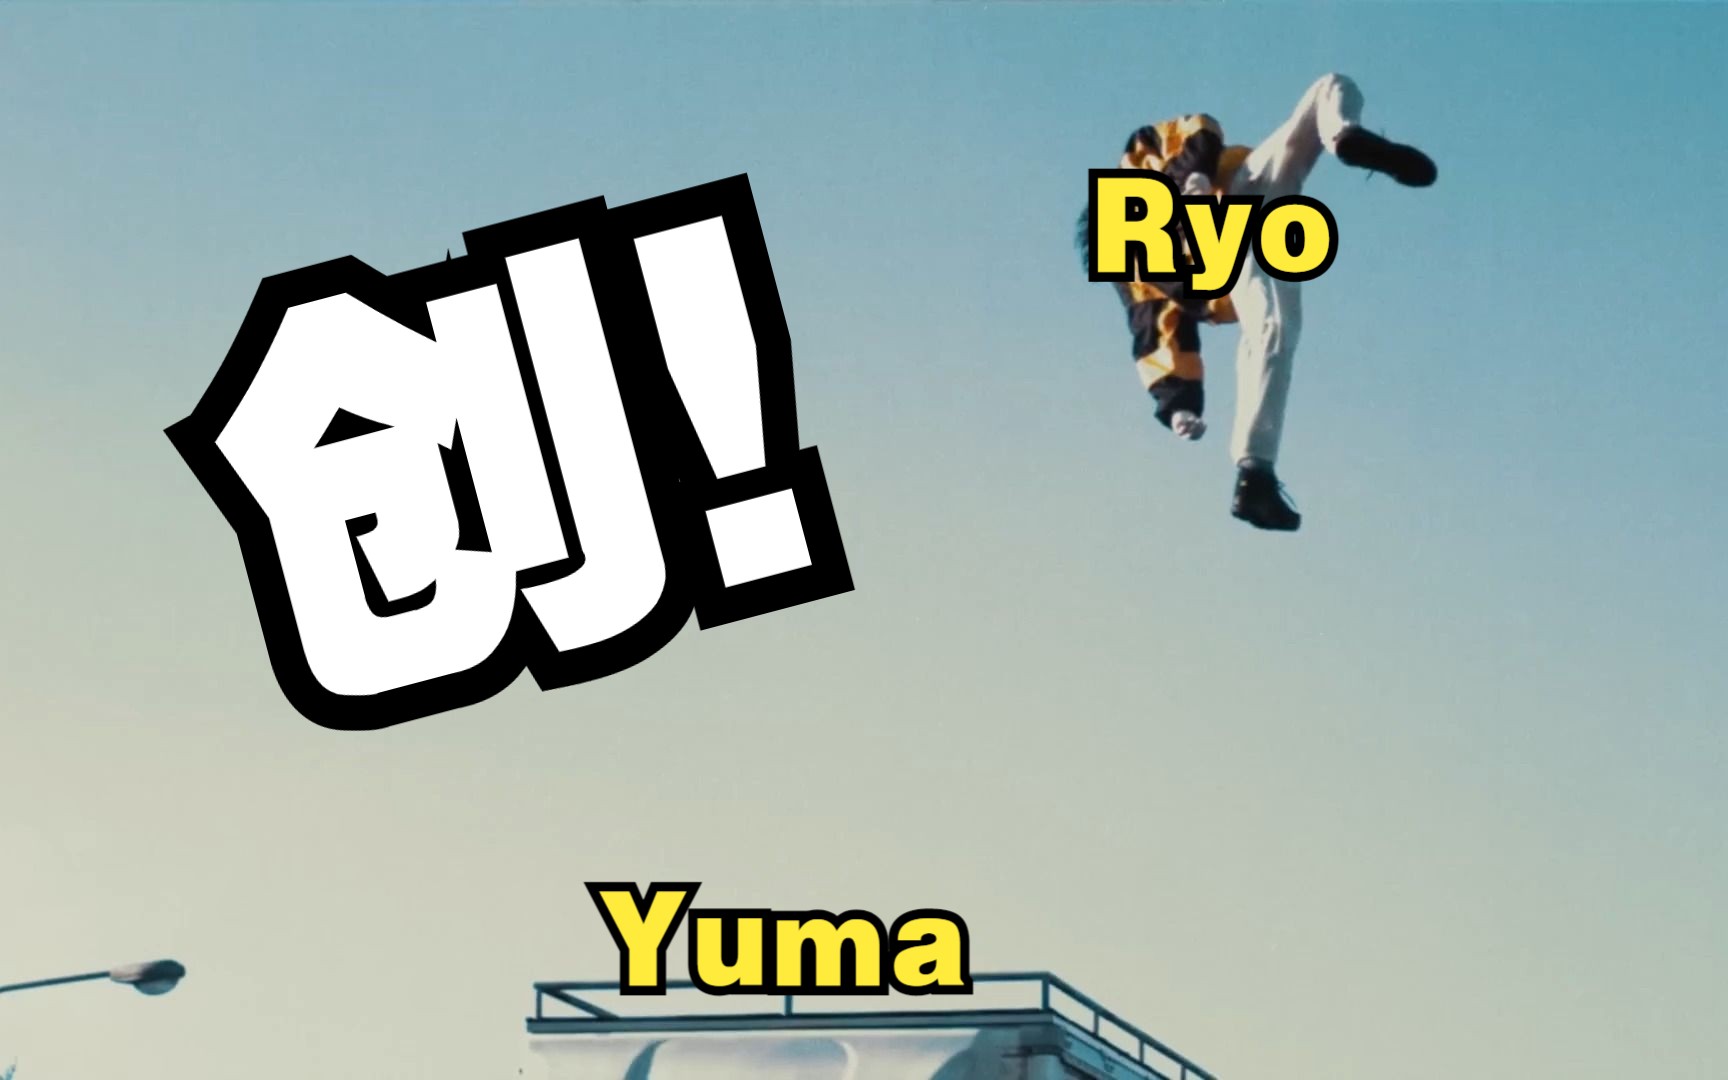 创飞Ryo的Yuma是屑